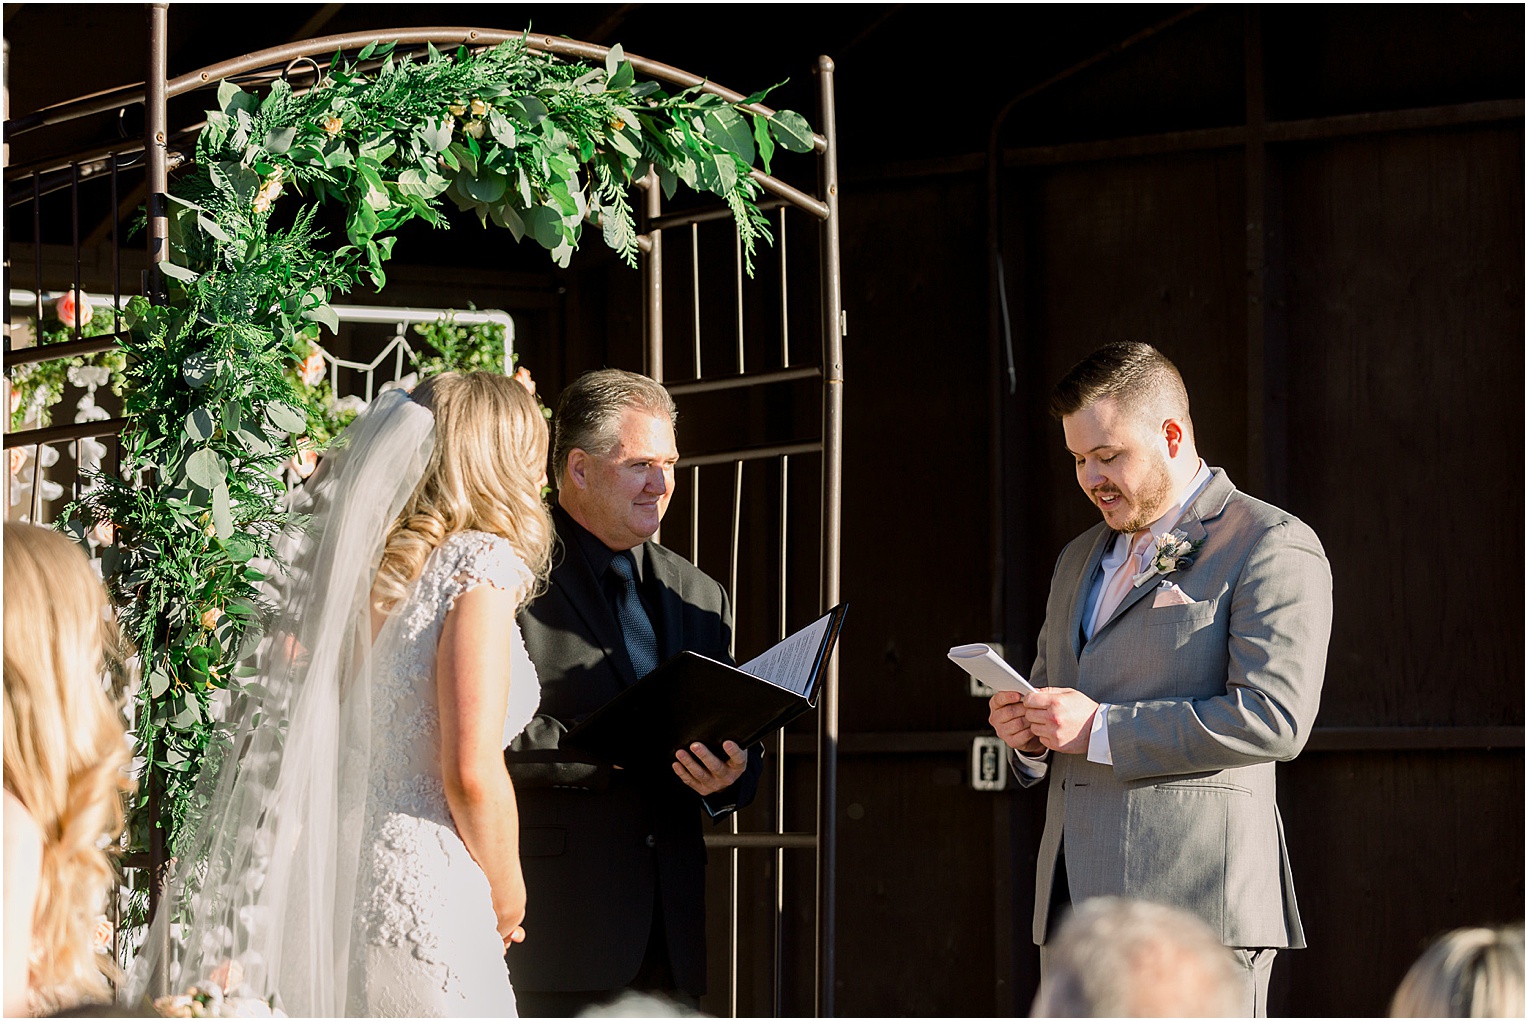 Annabelle + James Hilton El Conquistador Wedding outdoor wedding ceremony